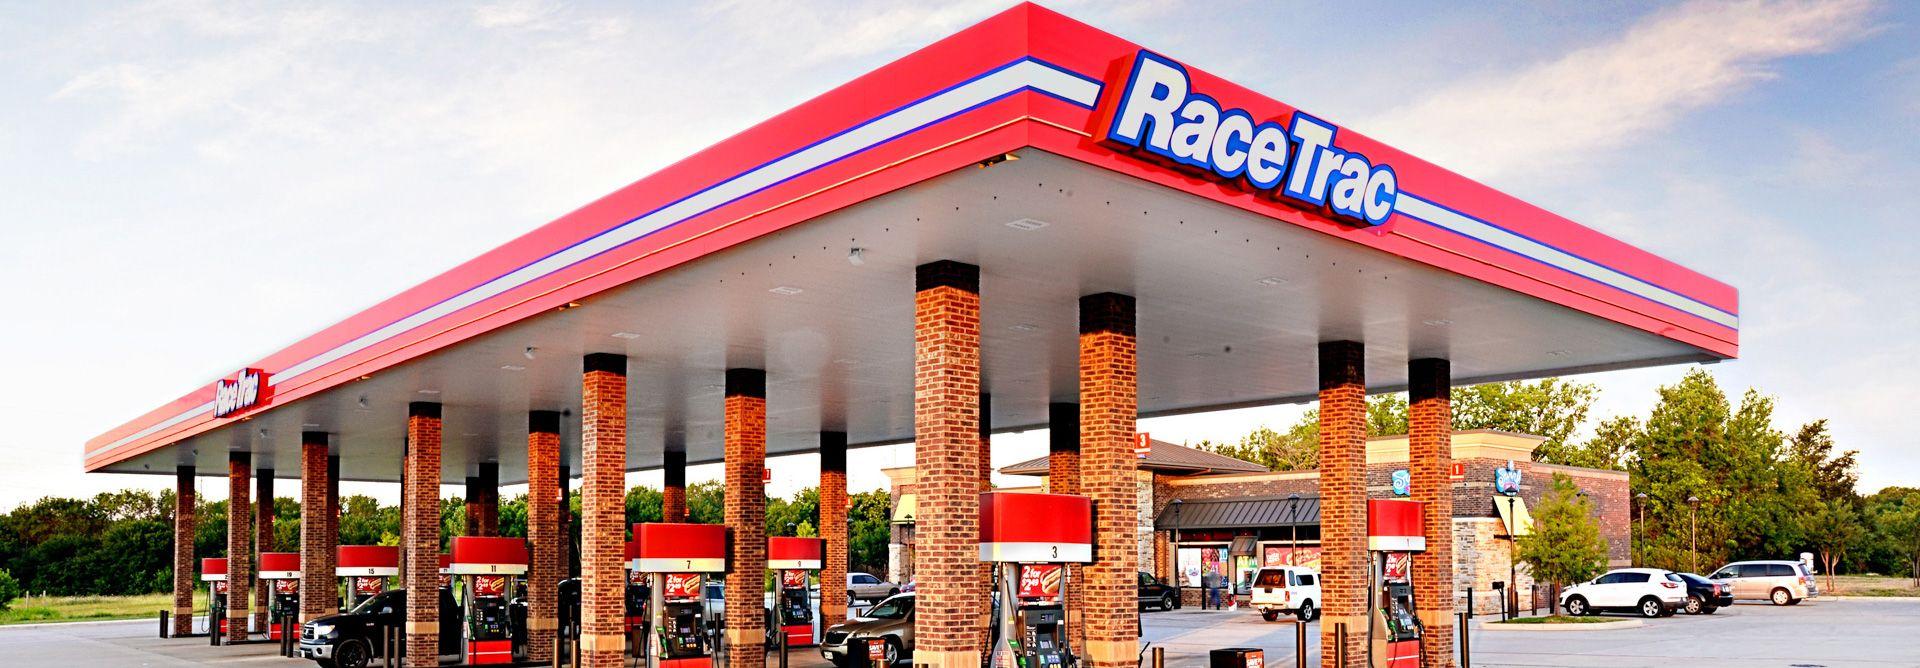 RaceTrac Gas Station Logo - RaceTrac Puts 25 Sites on Auction Block